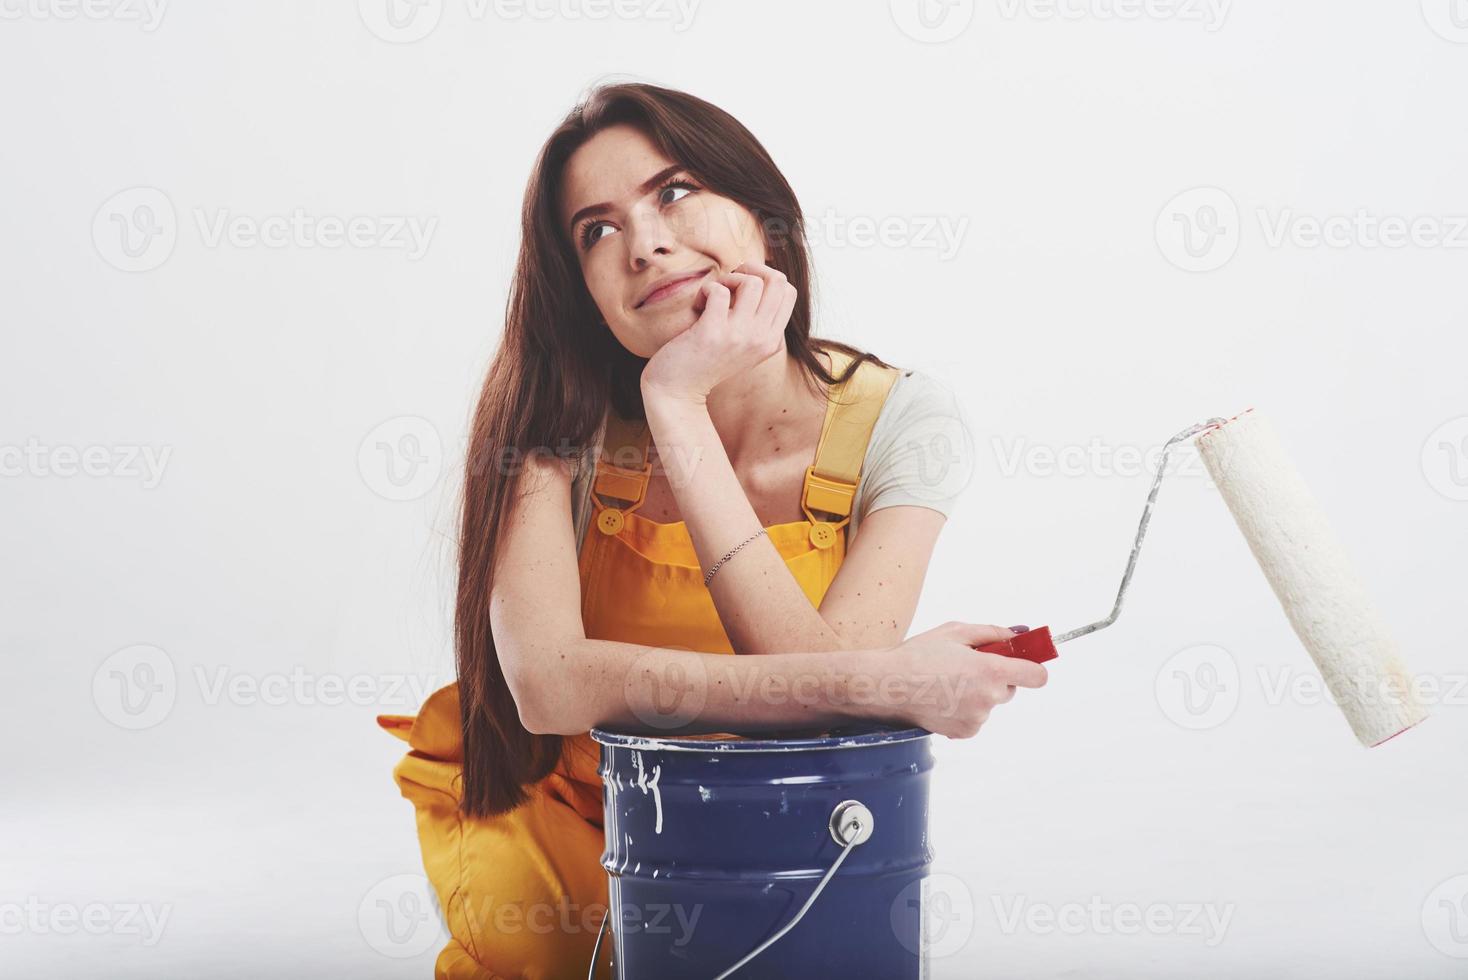 mirada de ensueño. mujer morena en uniforme amarillo se sienta contra fondo blanco en el estudio foto